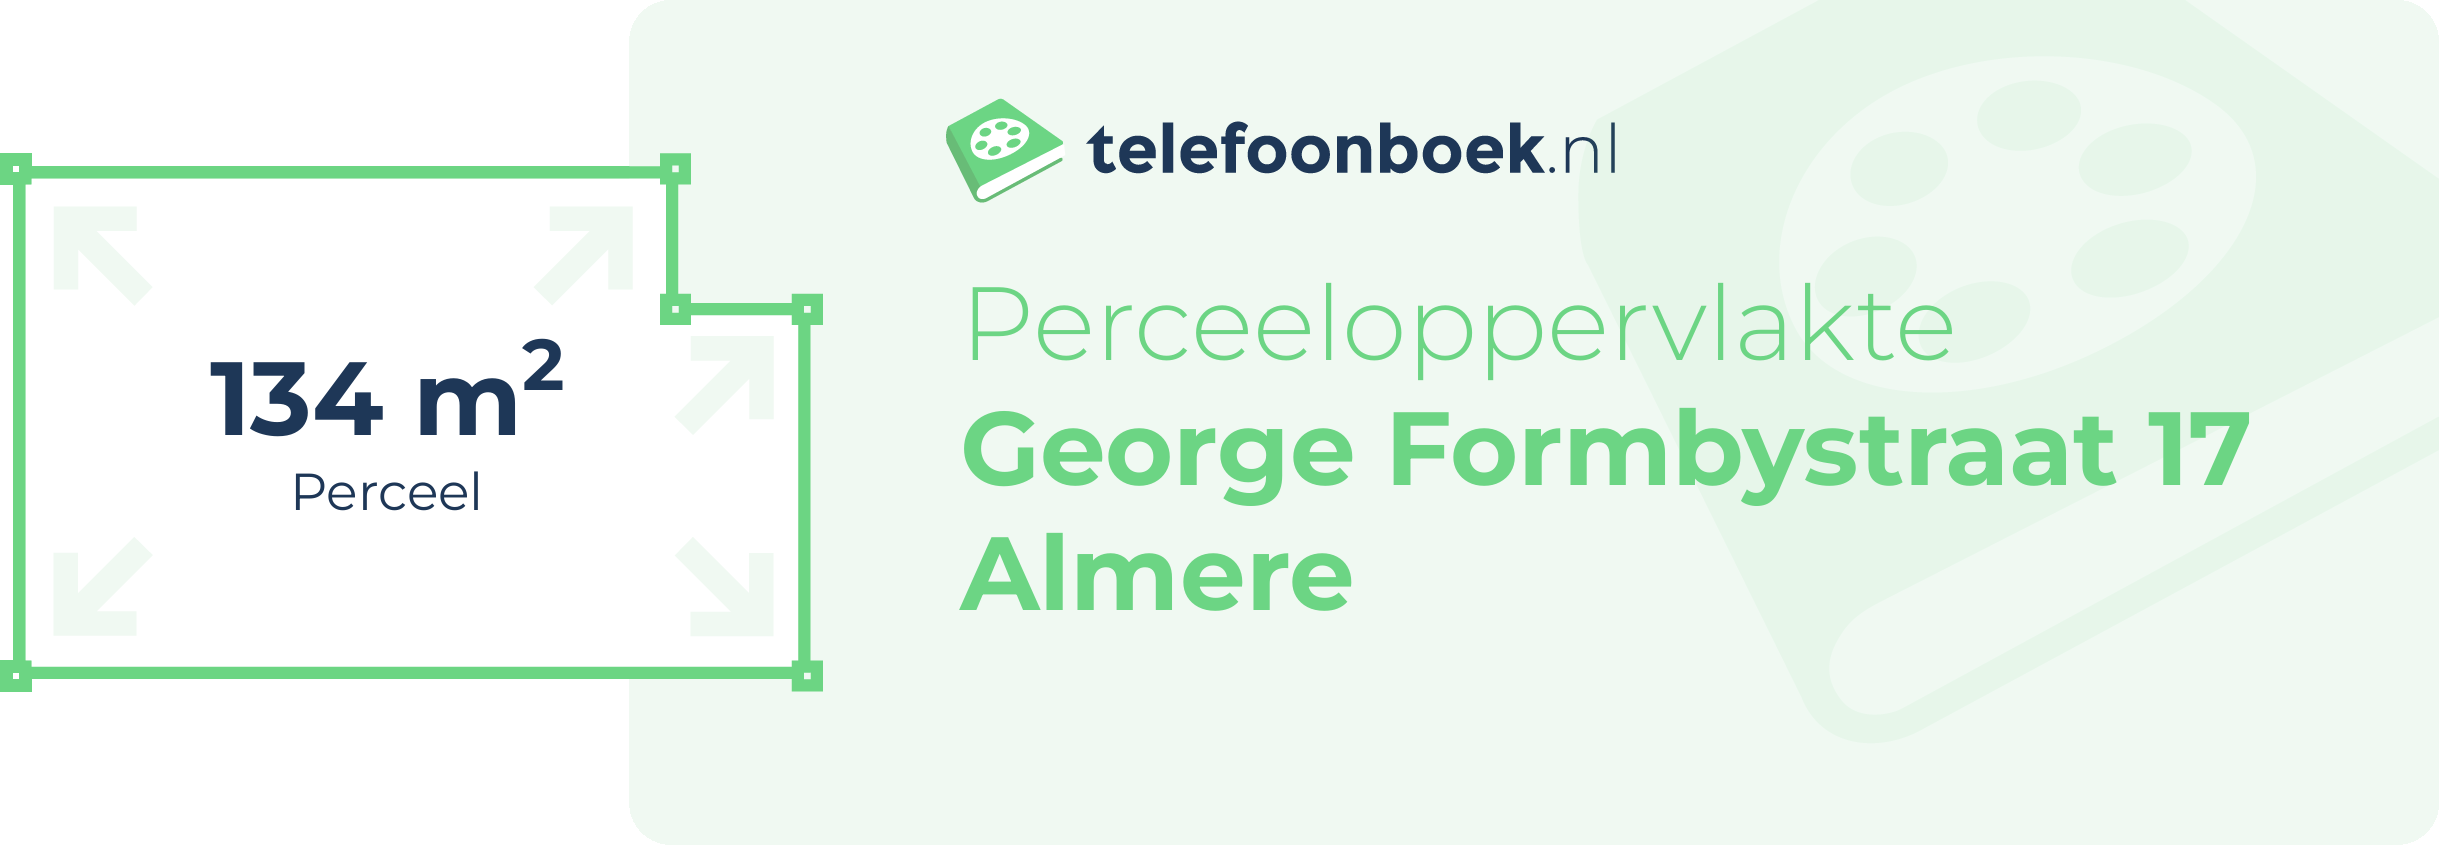 Perceeloppervlakte George Formbystraat 17 Almere